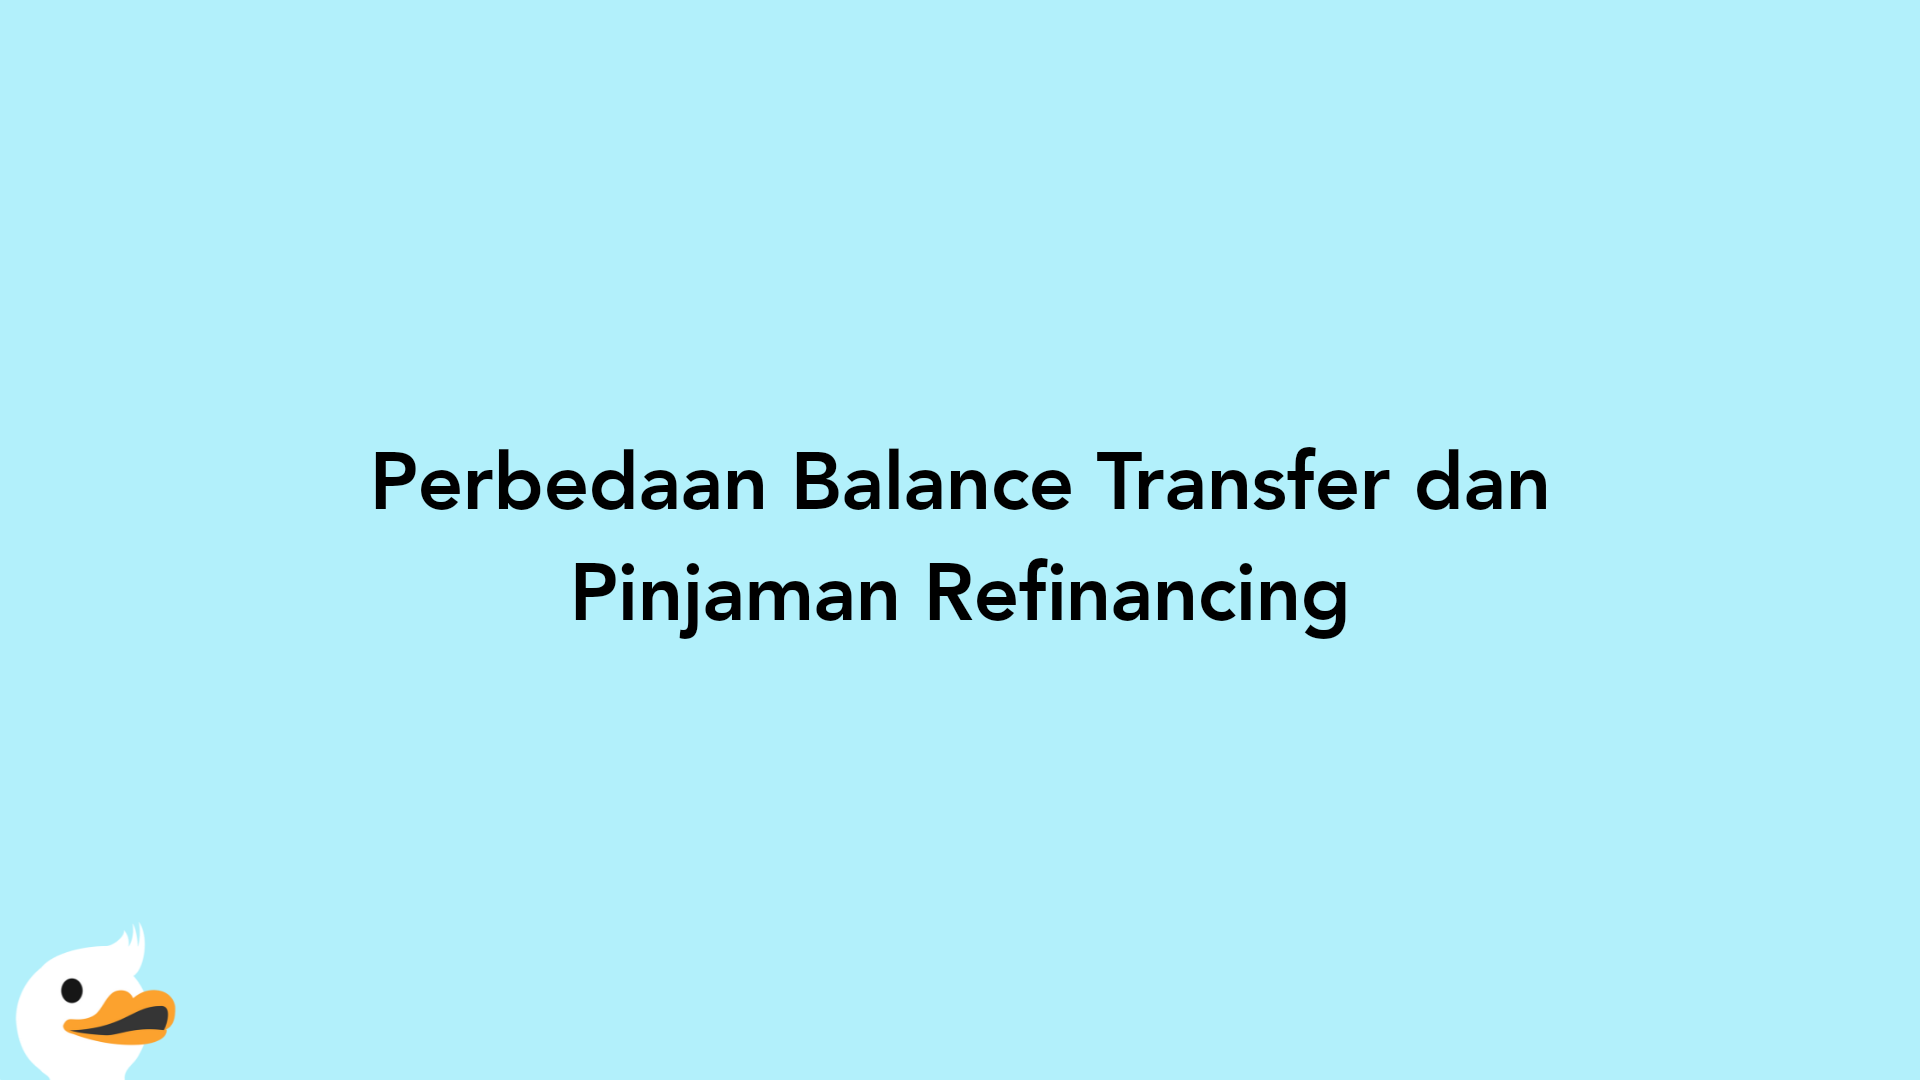 Perbedaan Balance Transfer dan Pinjaman Refinancing